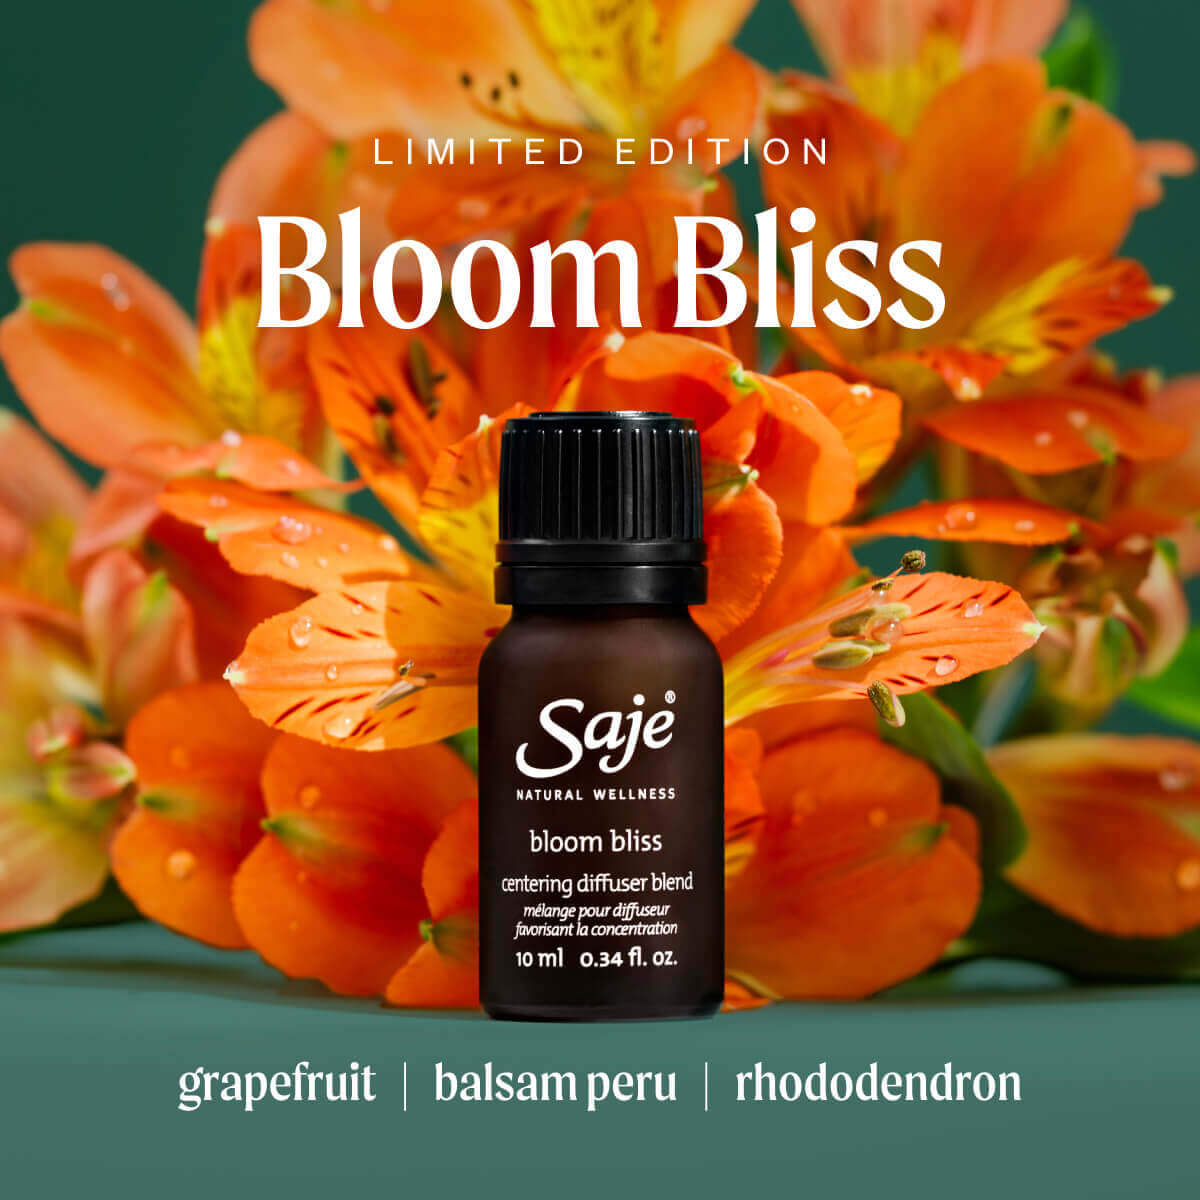 Bloom Bliss